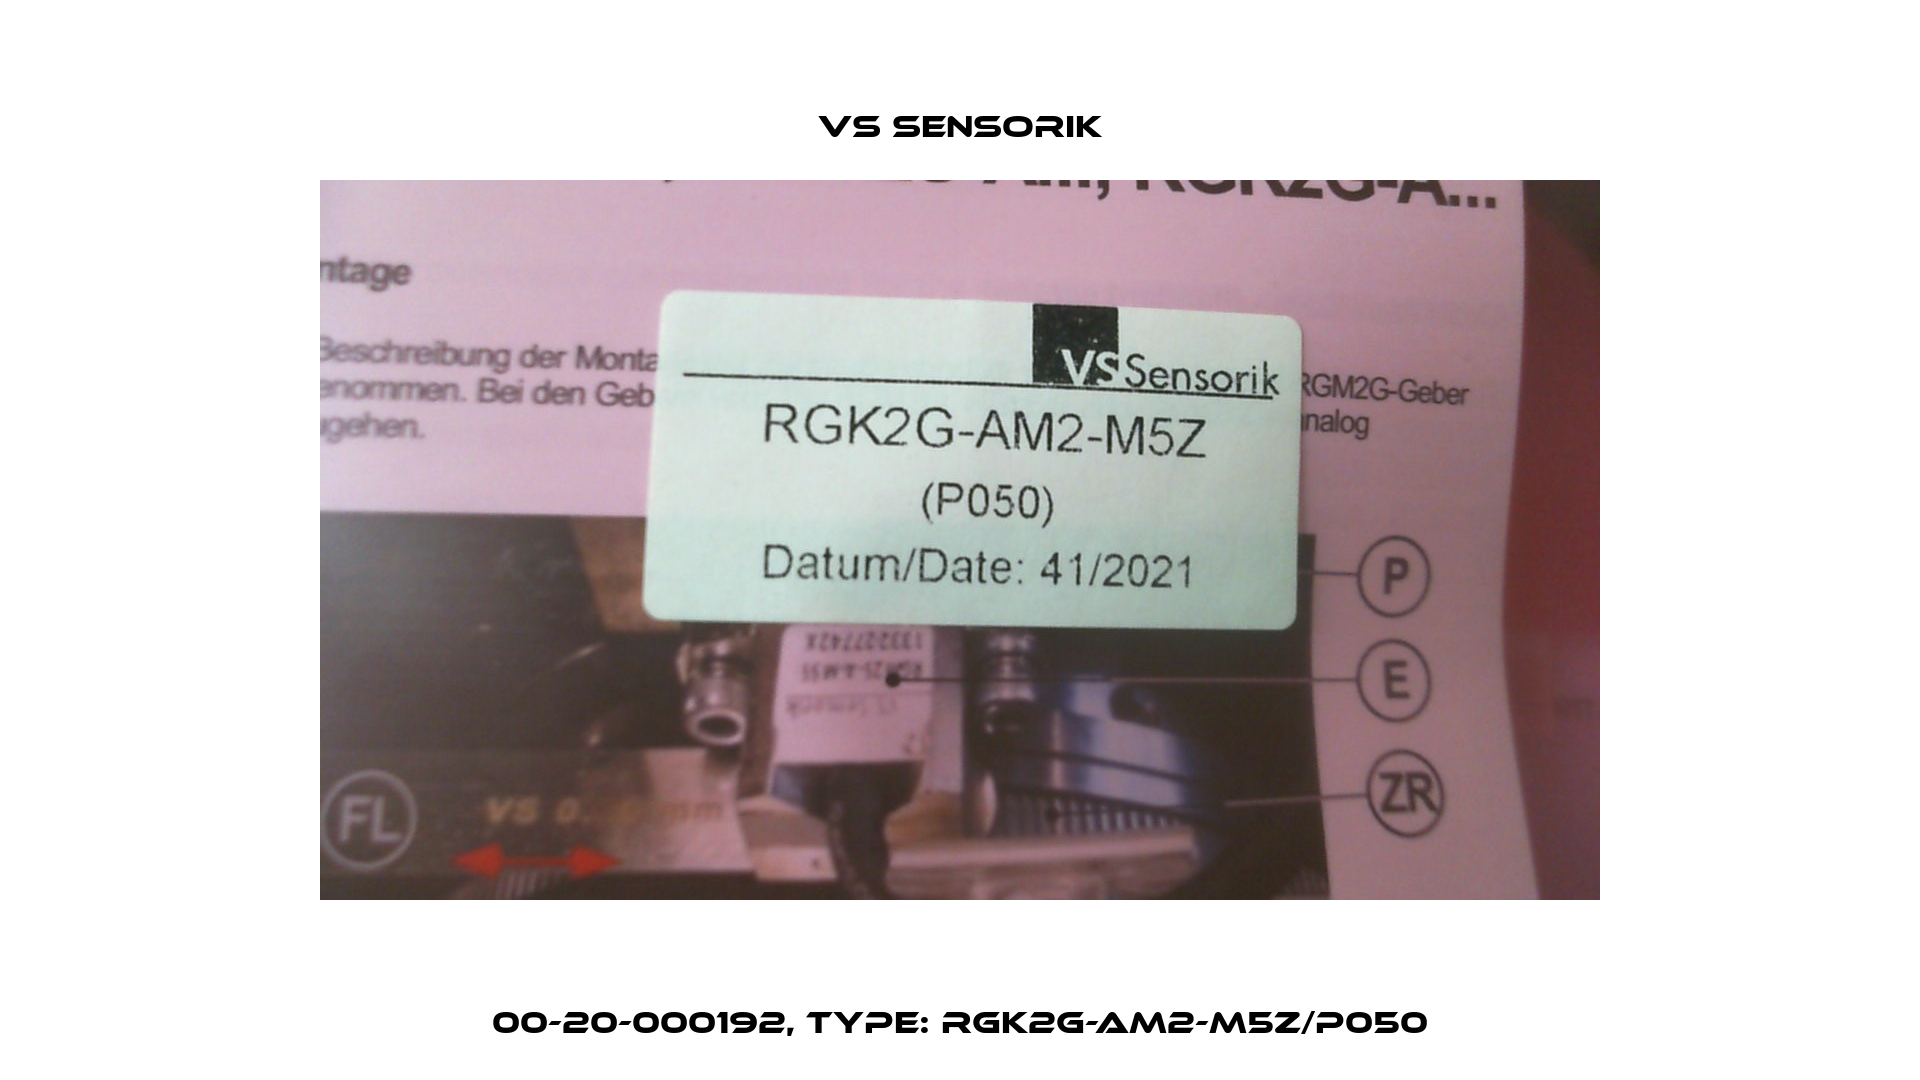 00-20-000192, Type: RGK2G-AM2-M5Z/P050 VS Sensorik